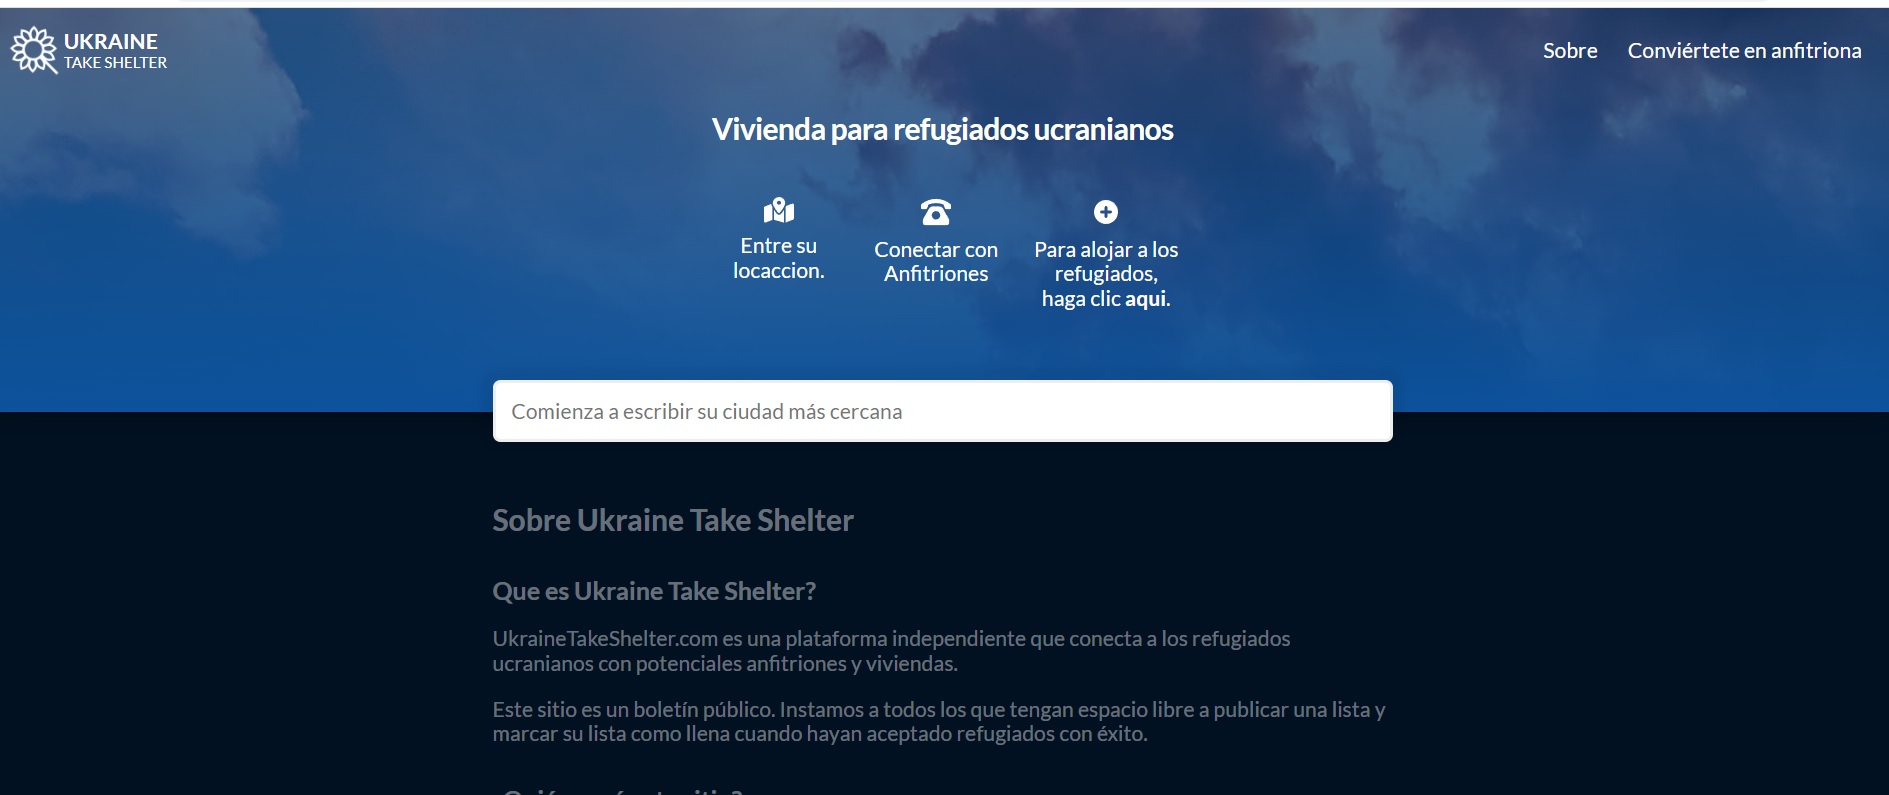 El sitio Ukraine Take Shelter vincula refugiados con personas que ofrecen hospedaje